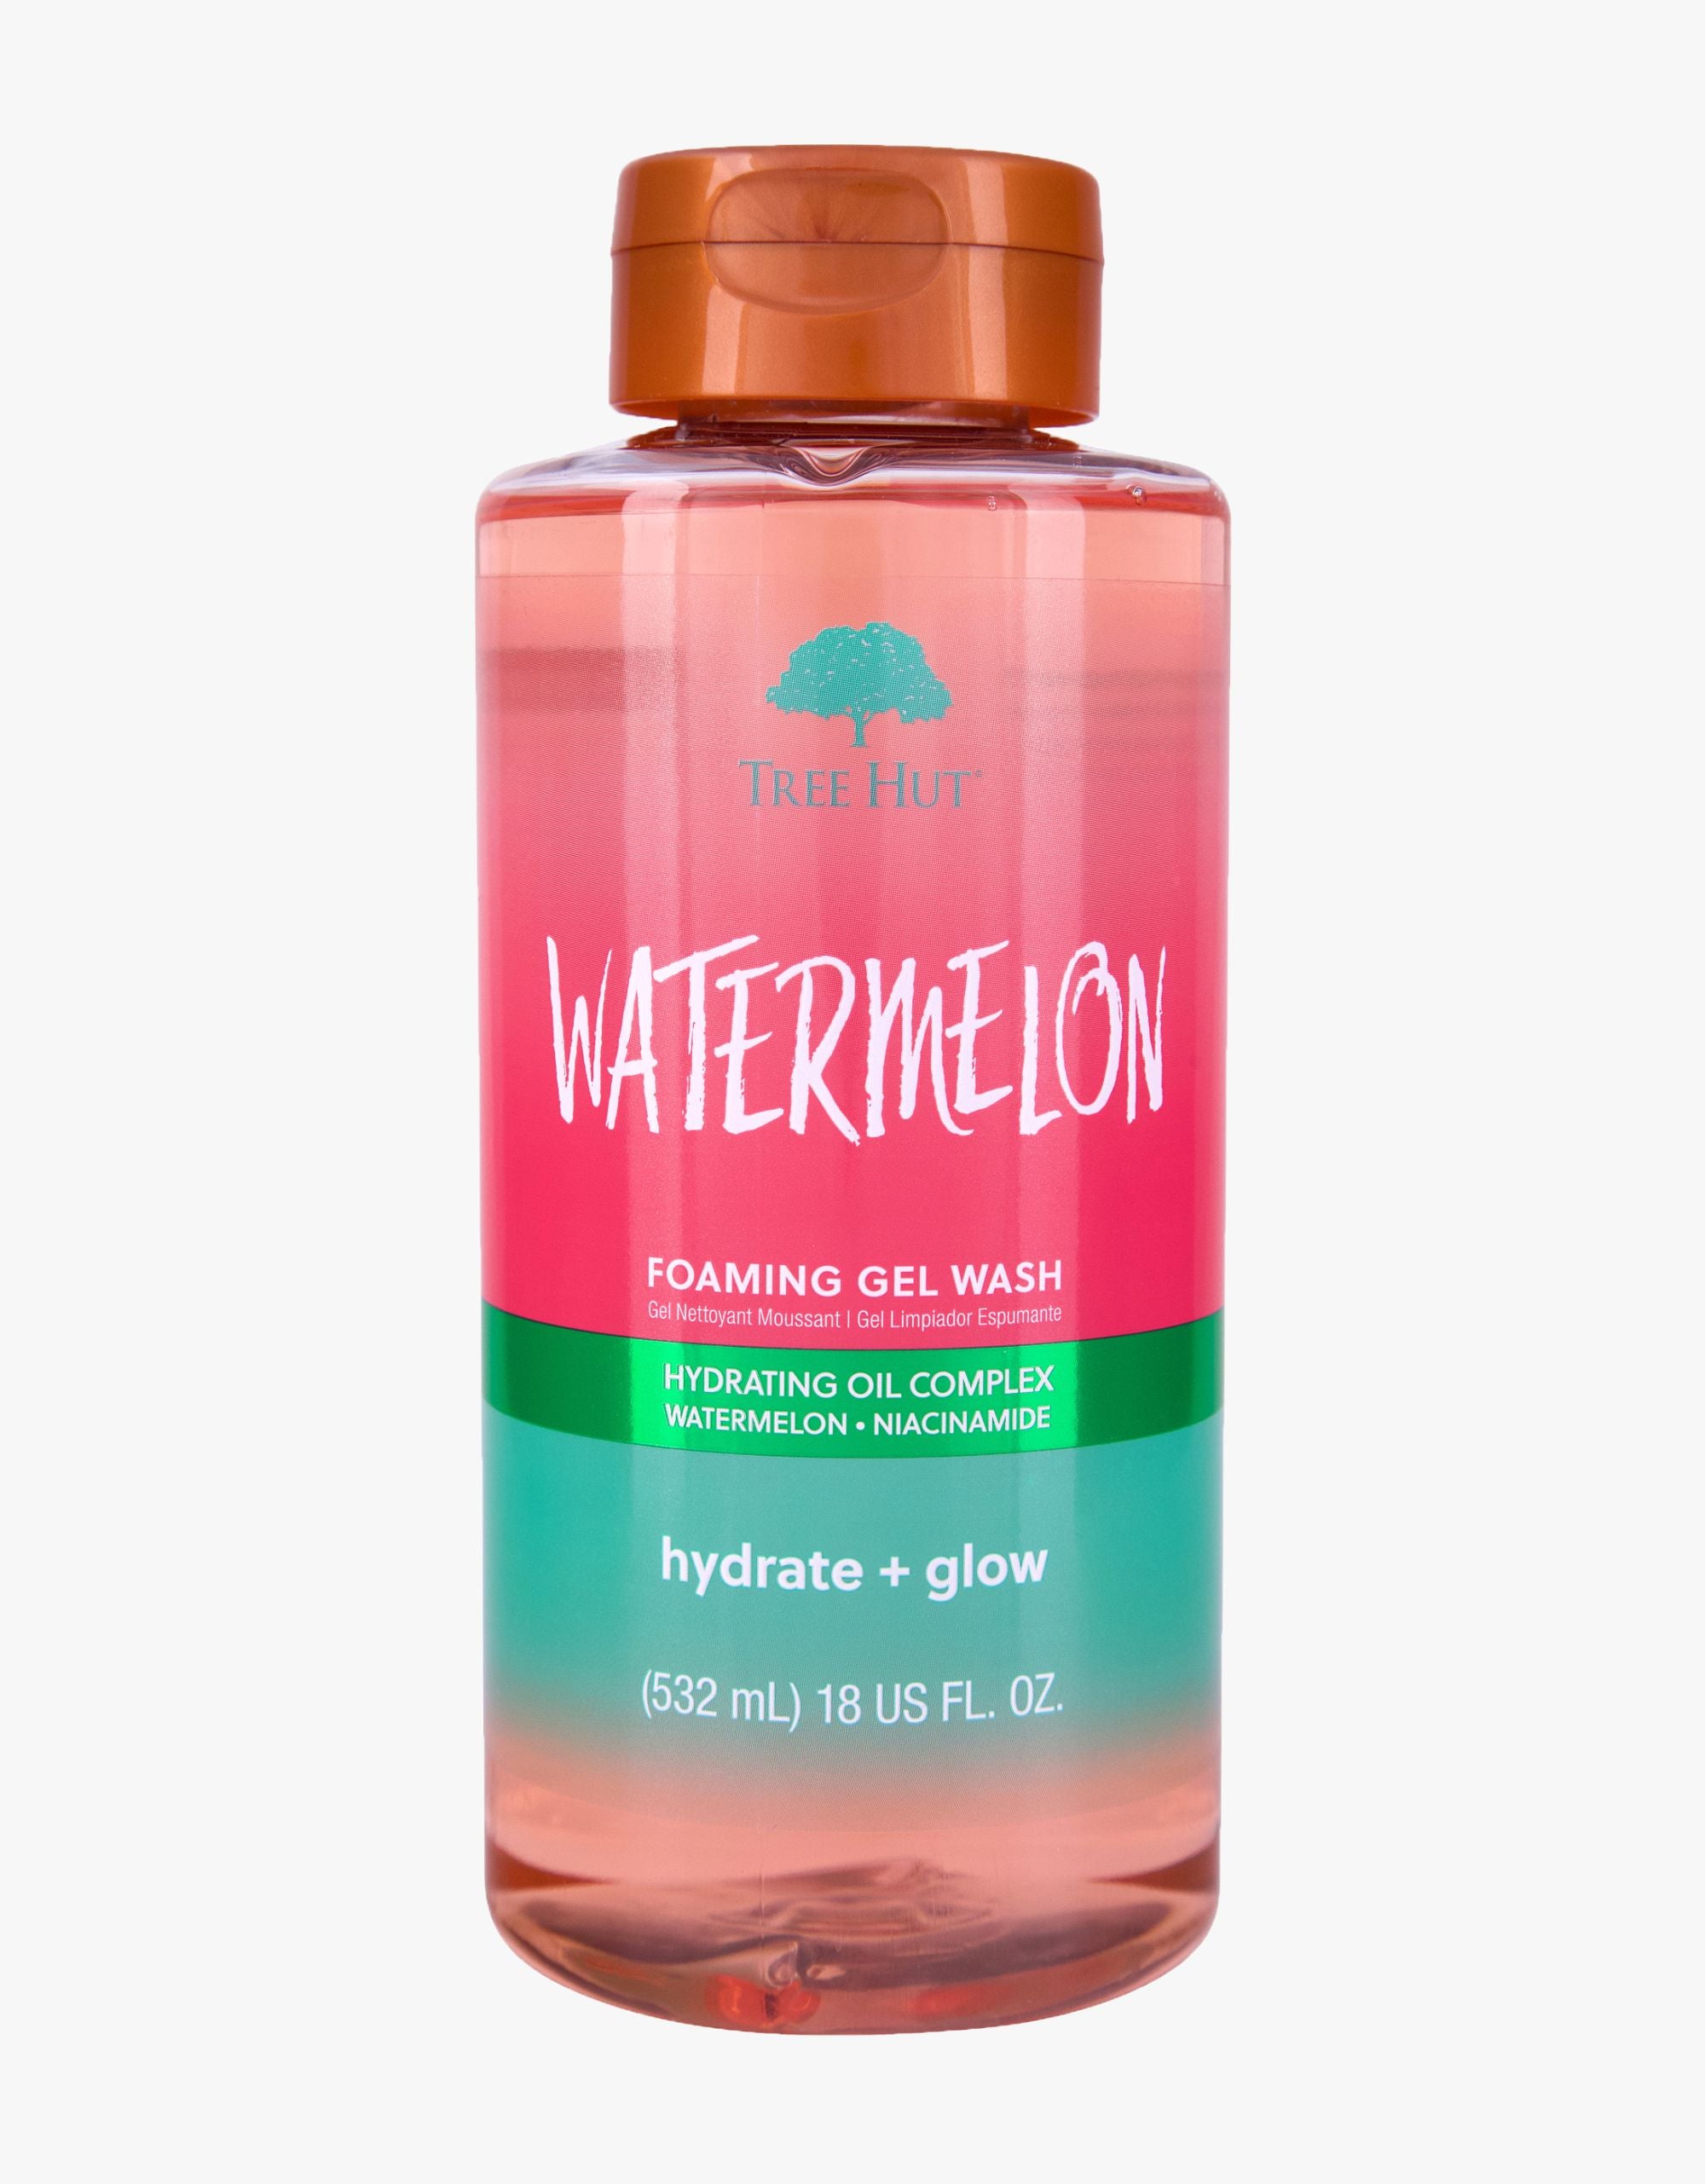 watermelon foaming gel wash